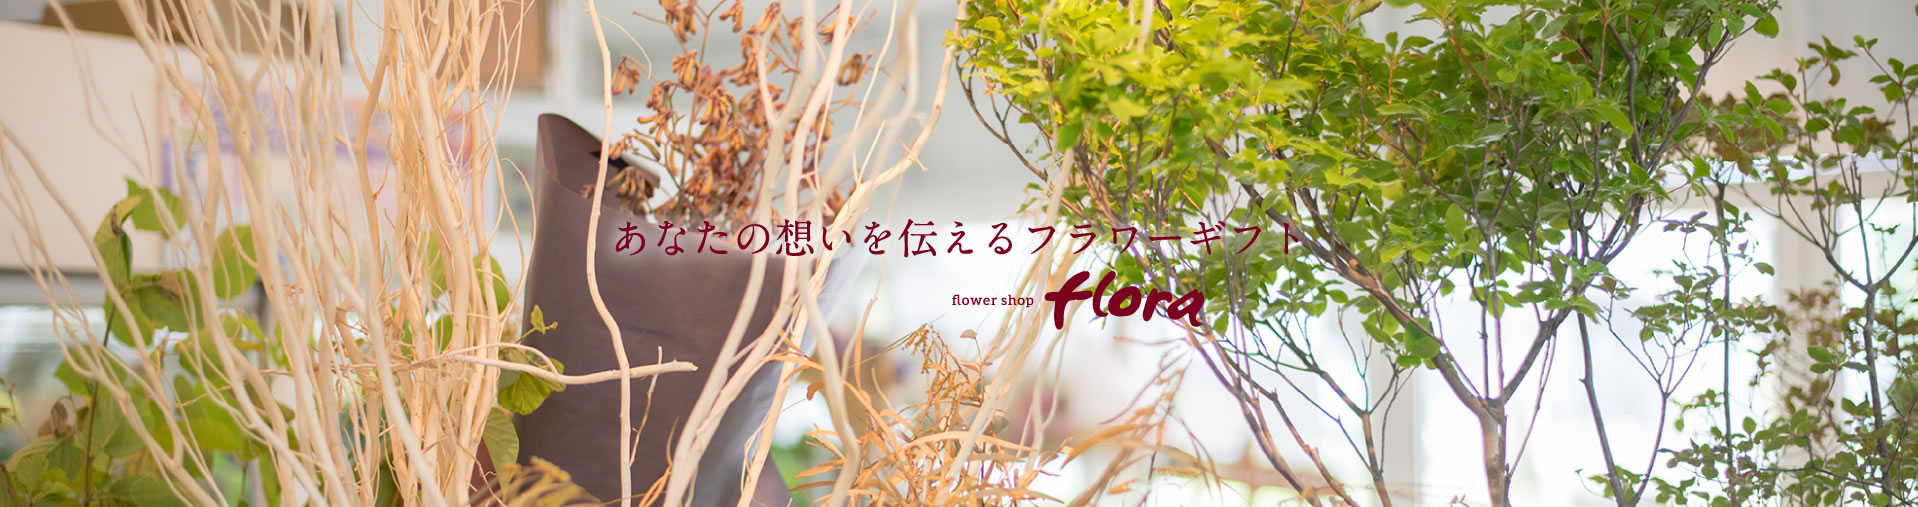 宮崎の花屋 フラワーデザインスクール Floraフローラ